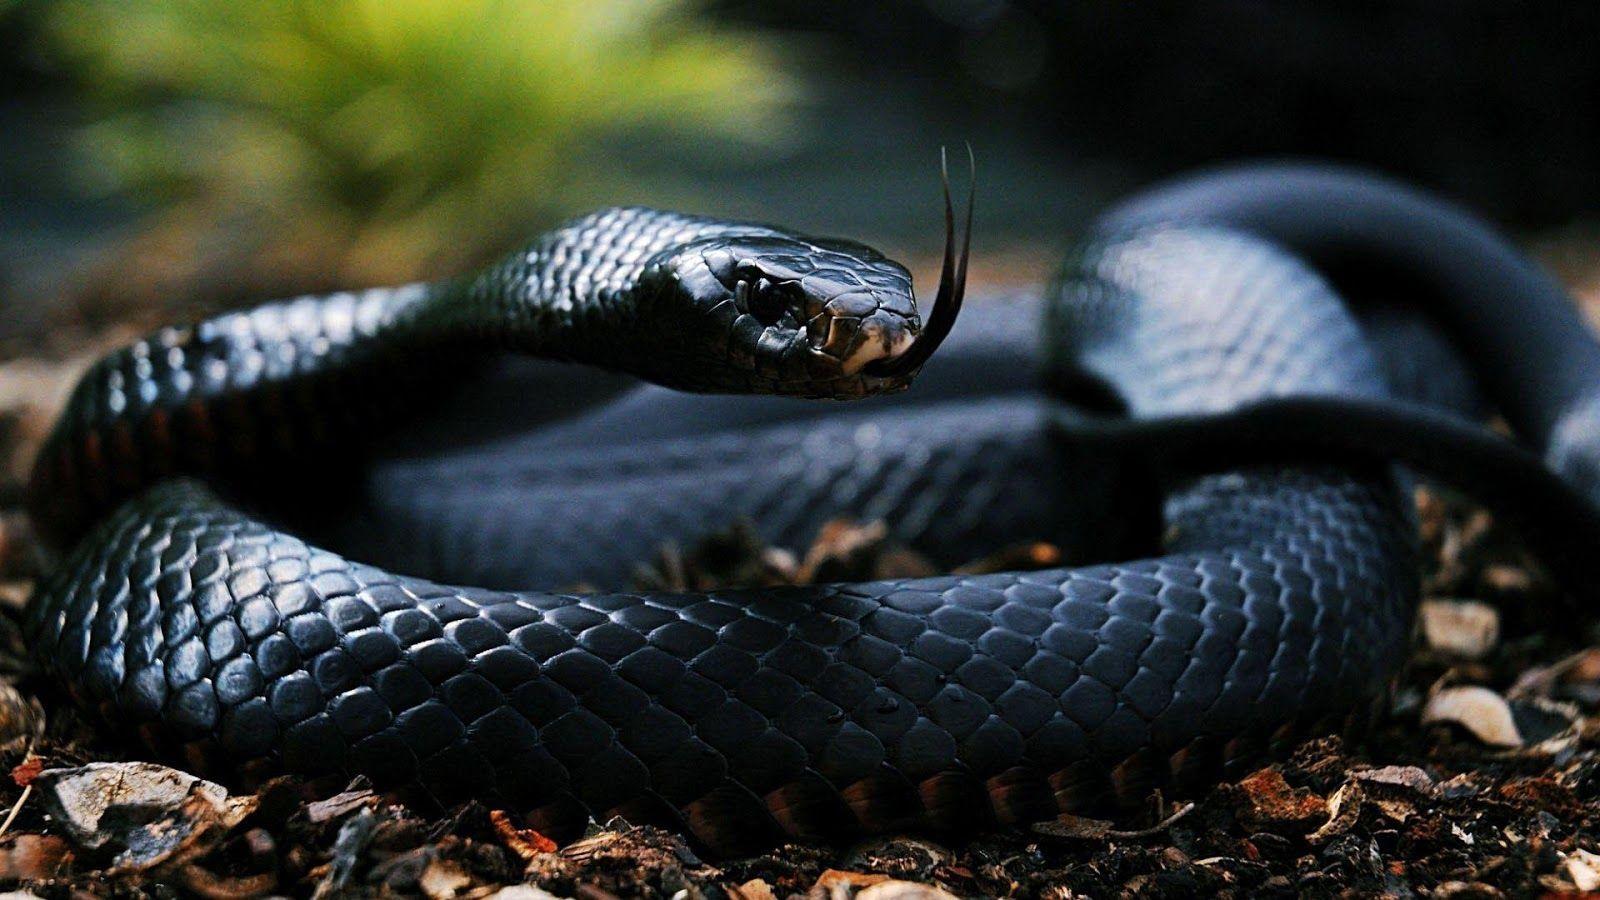 Black snake Wallpaper Mobile Pics × Black Snake. Black mamba